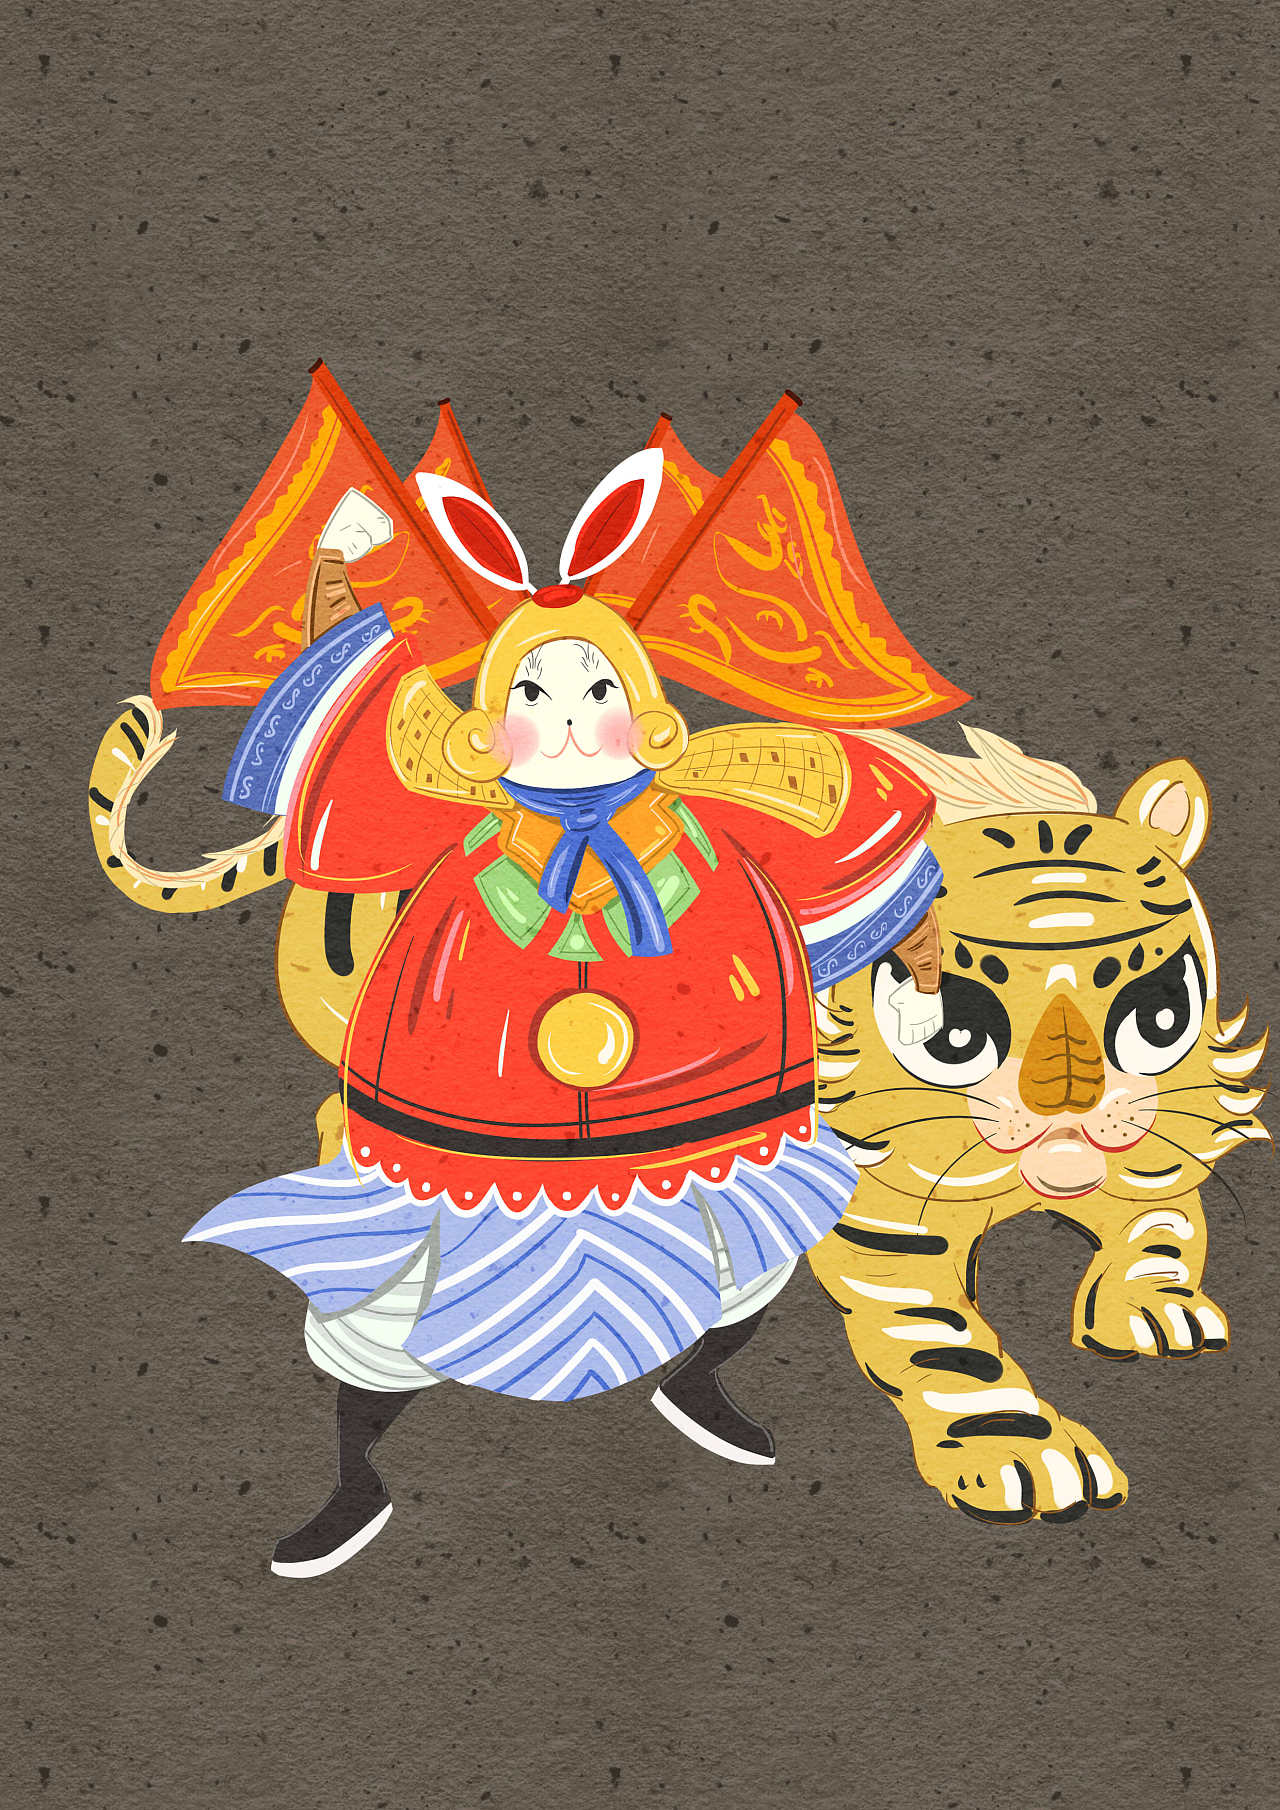 治愈系插画老虎和兔子的故事 - 堆糖，美图壁纸兴趣社区